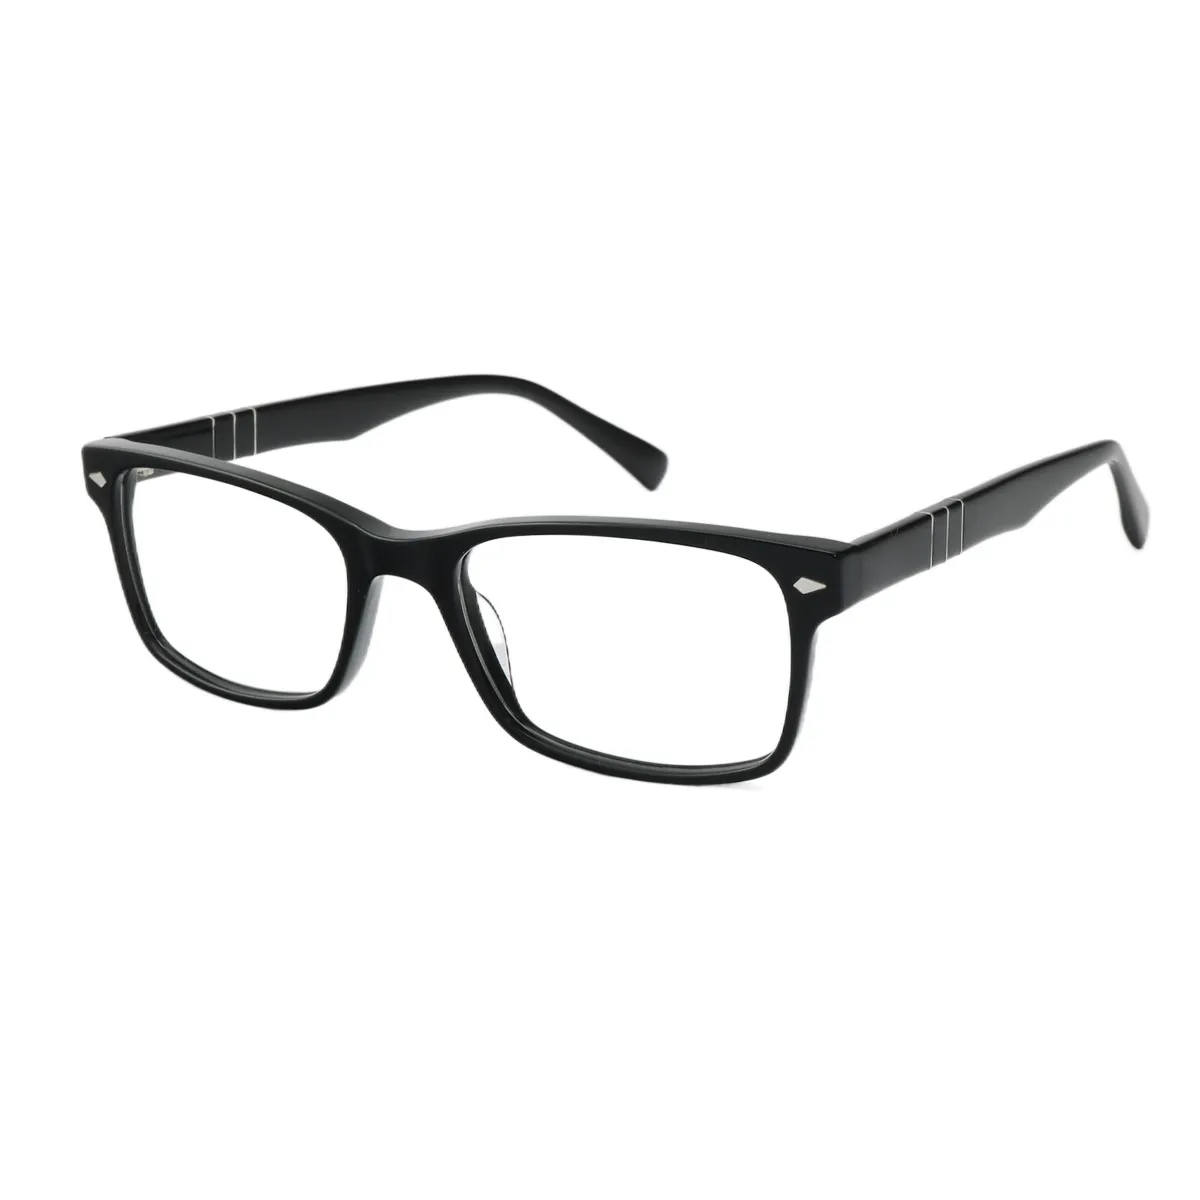 Fashion Square Black Eyeglasses for Women